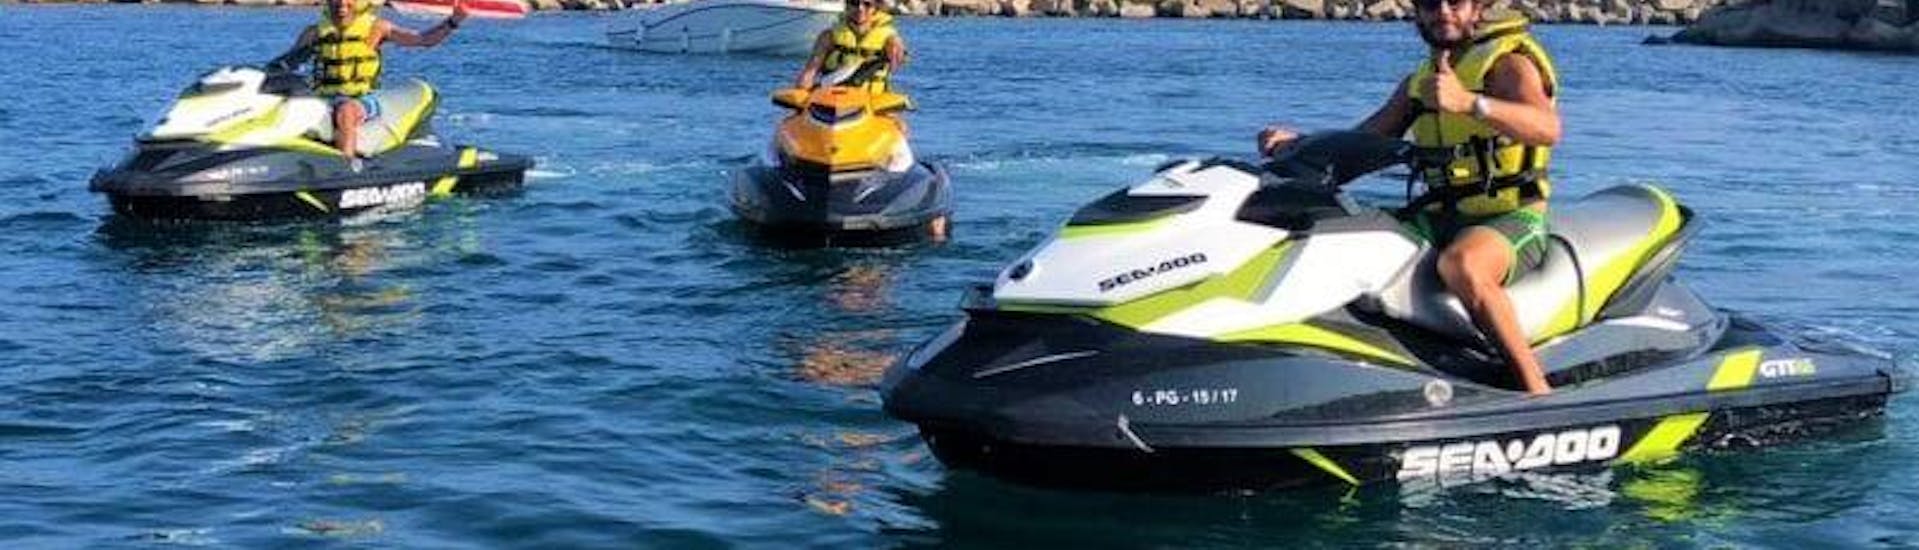 Un safari en moto de agua va hasta el Mar Menor con BaliserMar.